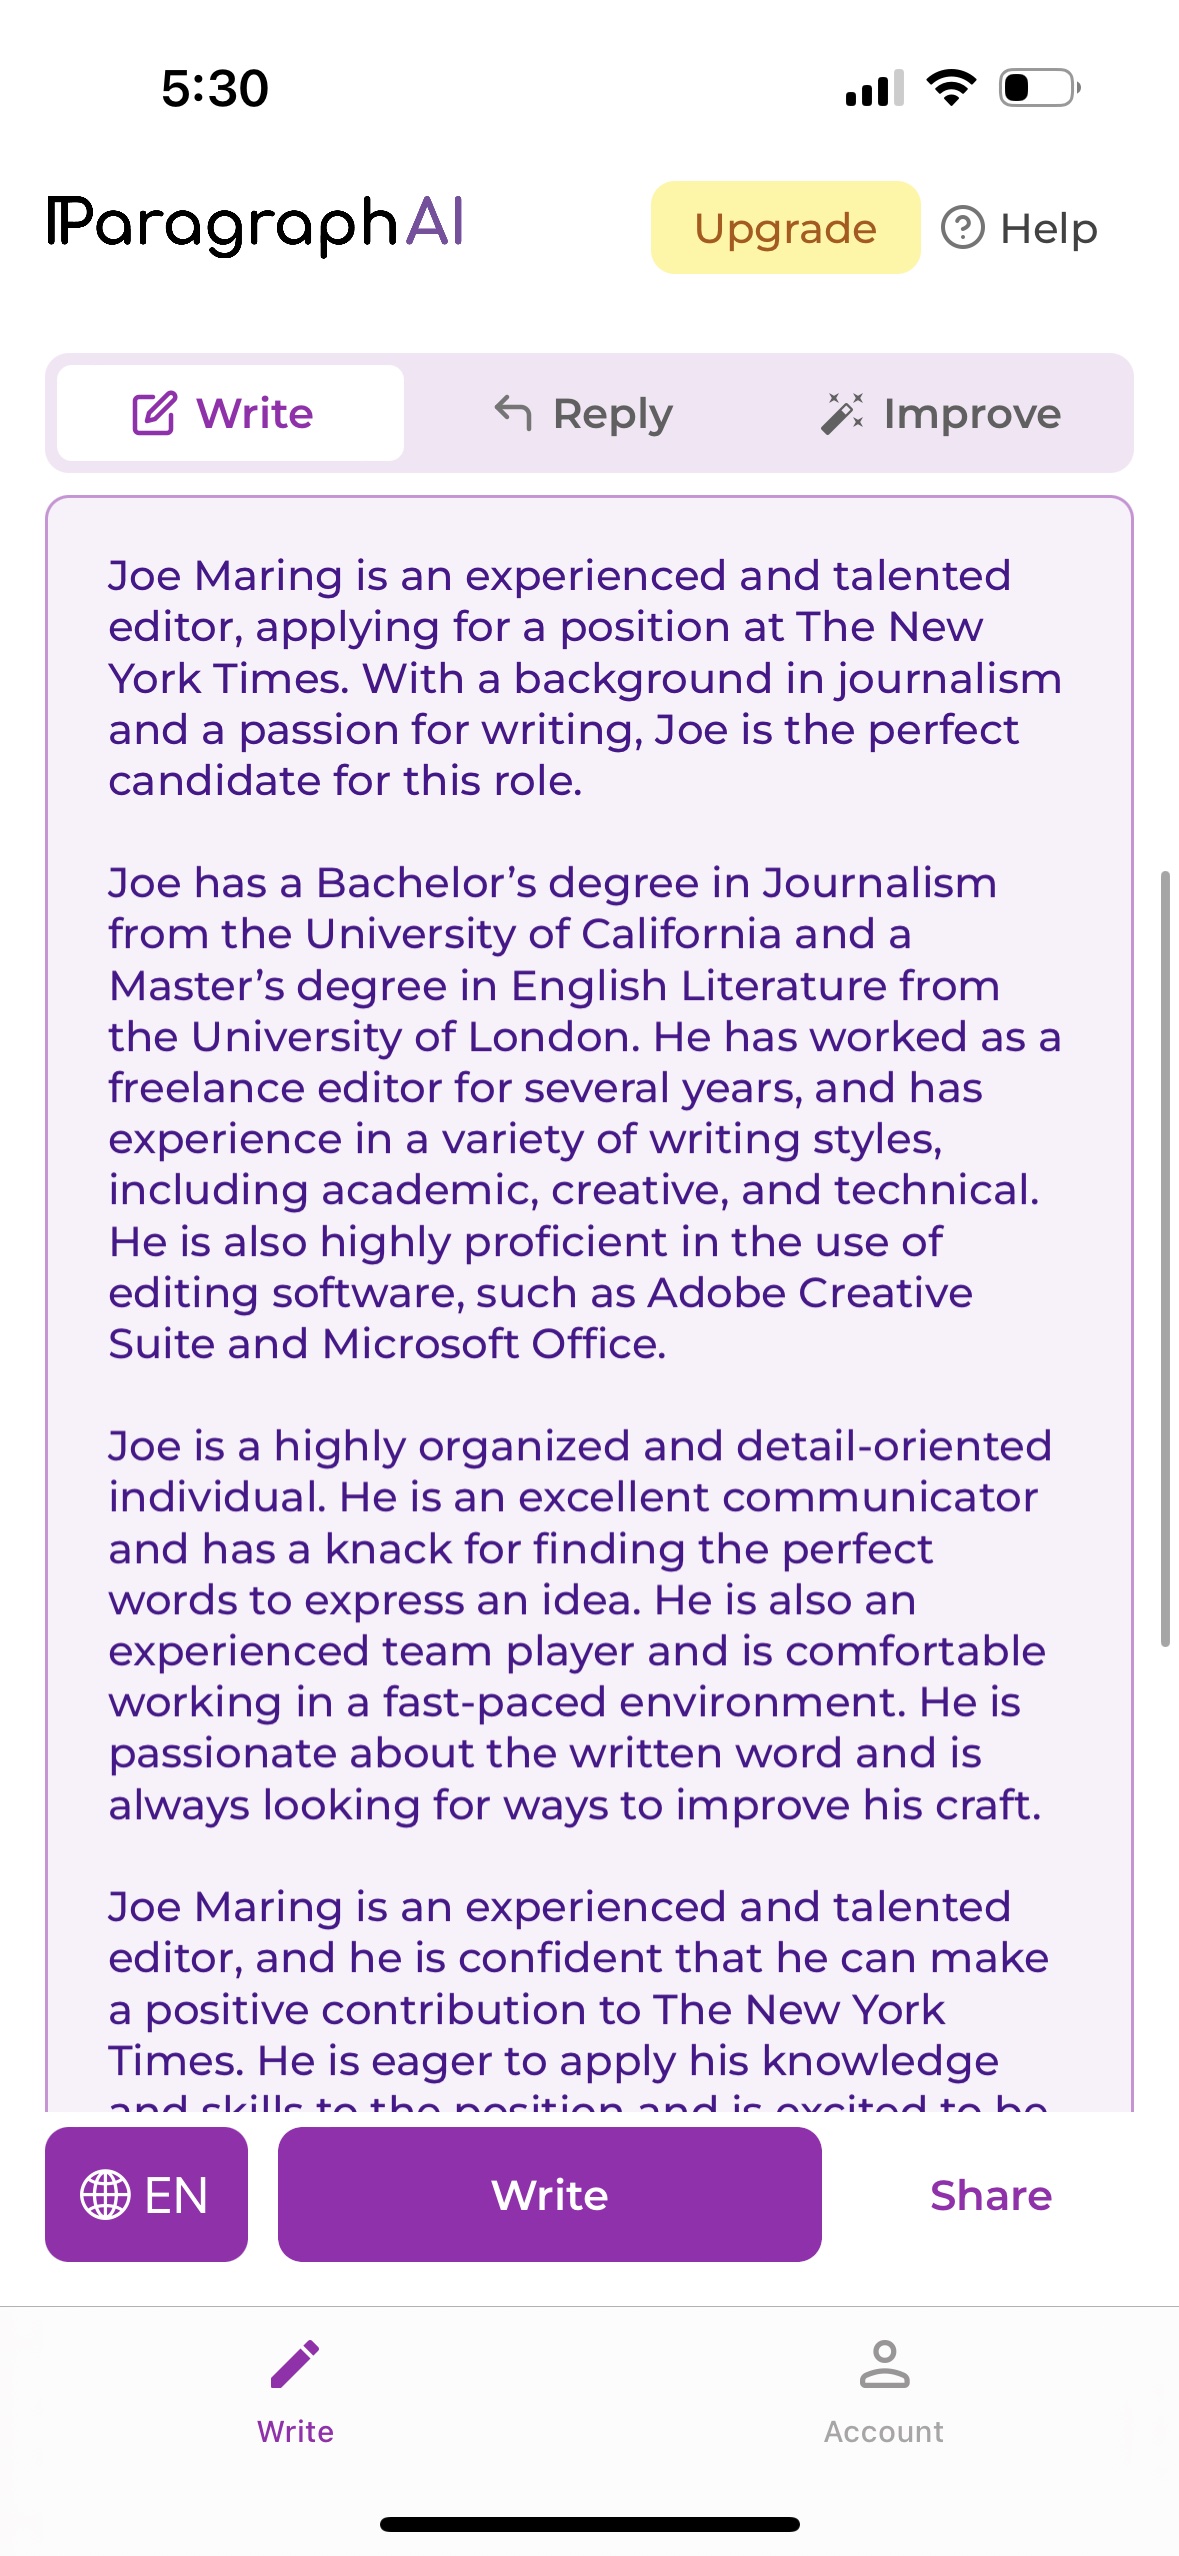 Um currículo para Joe Maring, escrito por ParagraphAI.  Lê-se: 